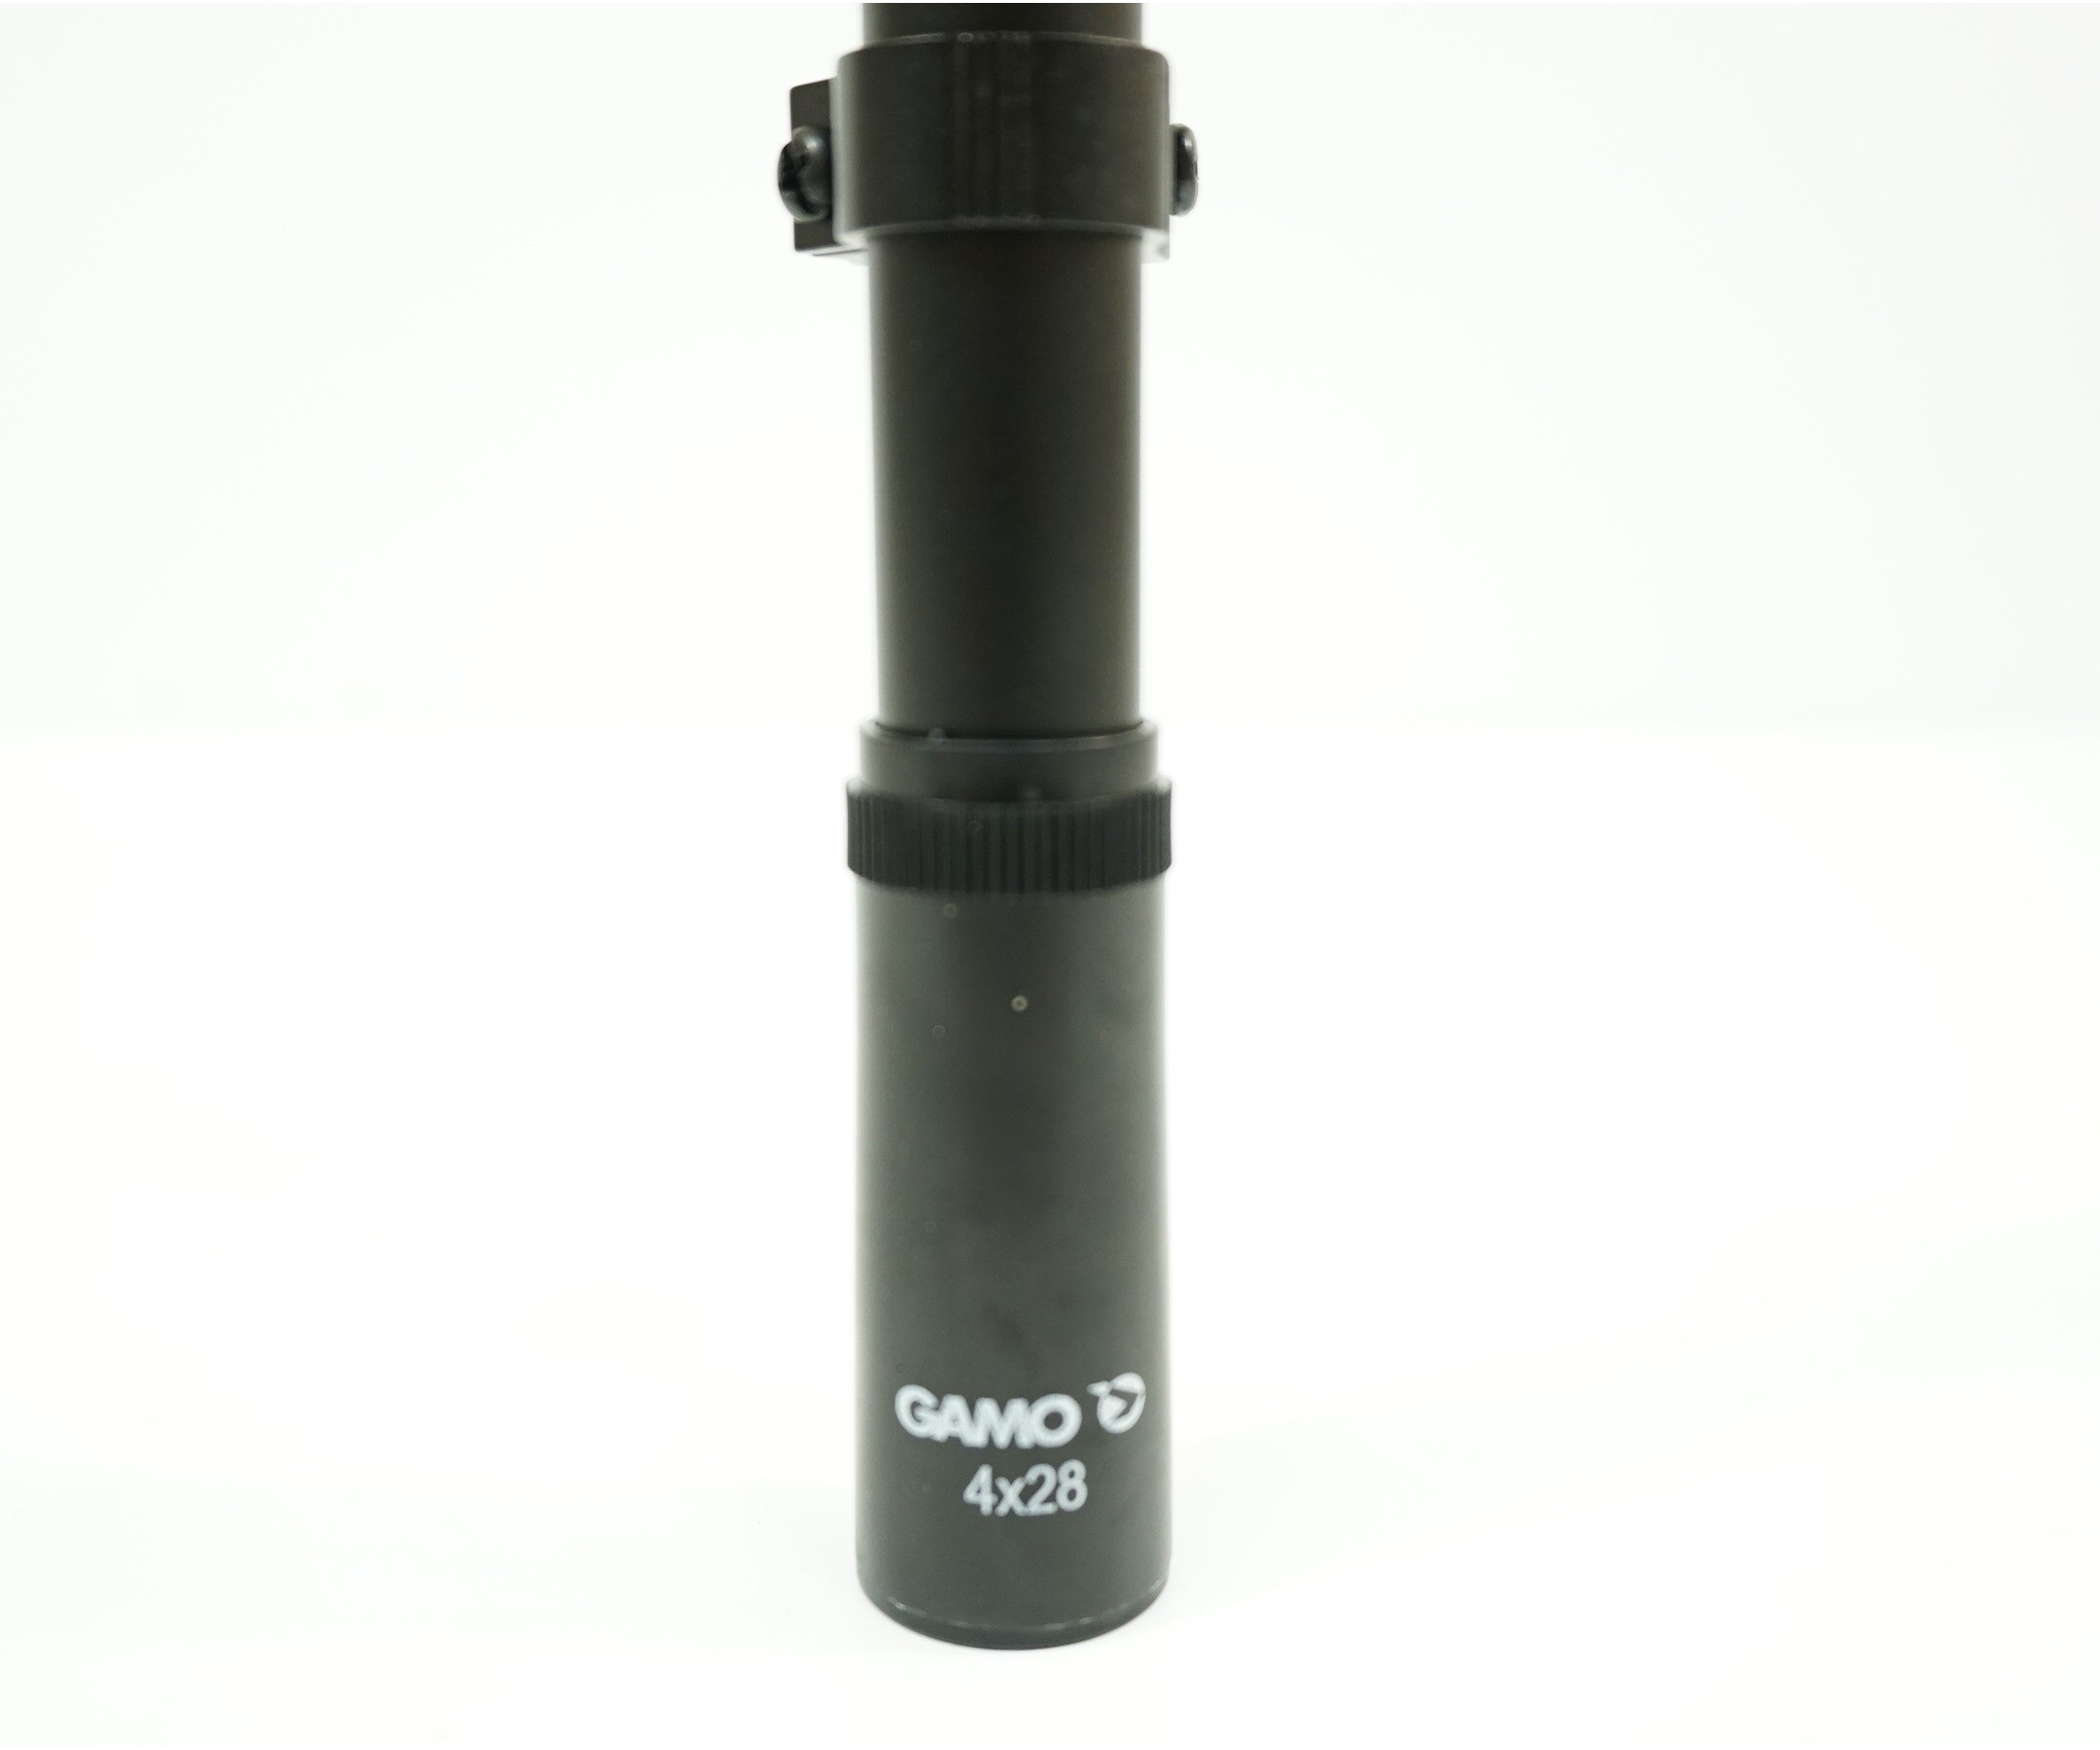 Оптический прицел Gamo 4x28, изображение 4